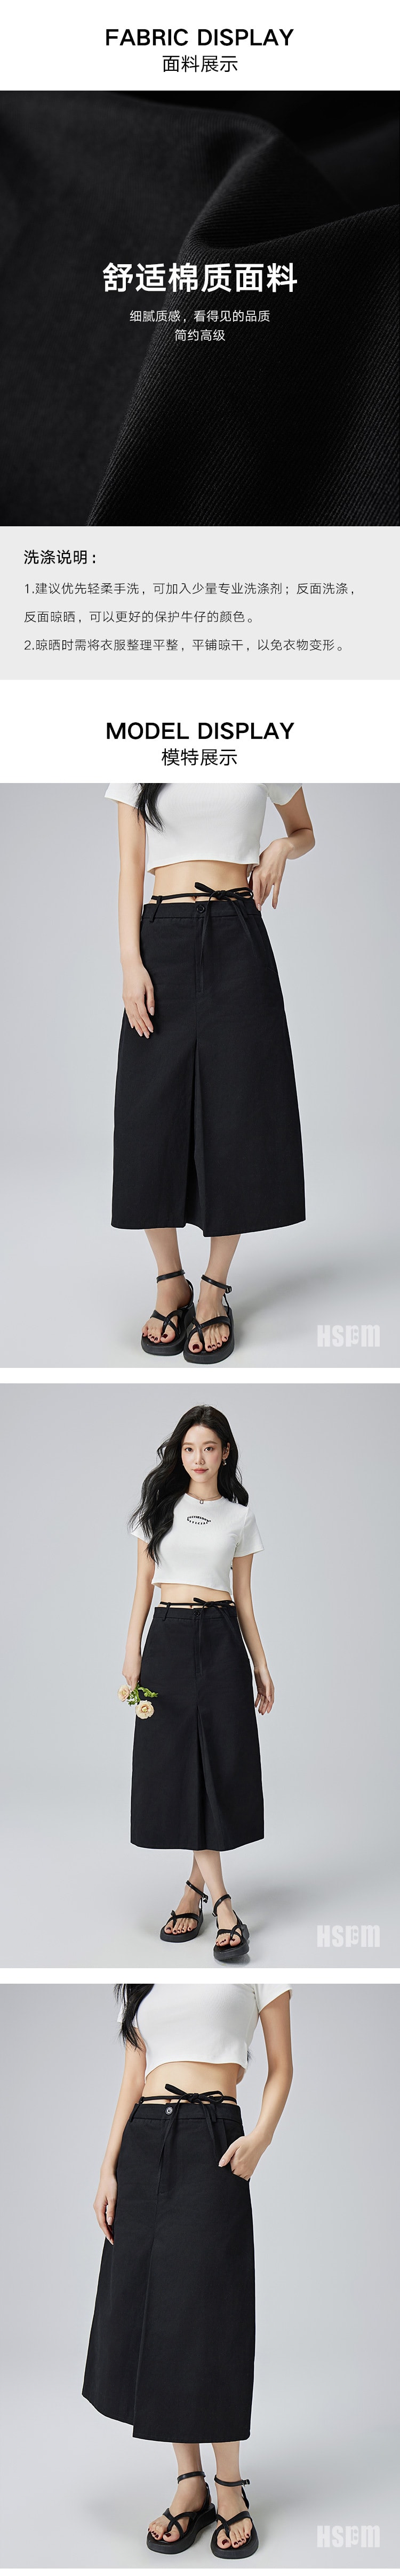 【中国直邮】HSPM 新款高腰A字系带开叉半身裙 黑色 L